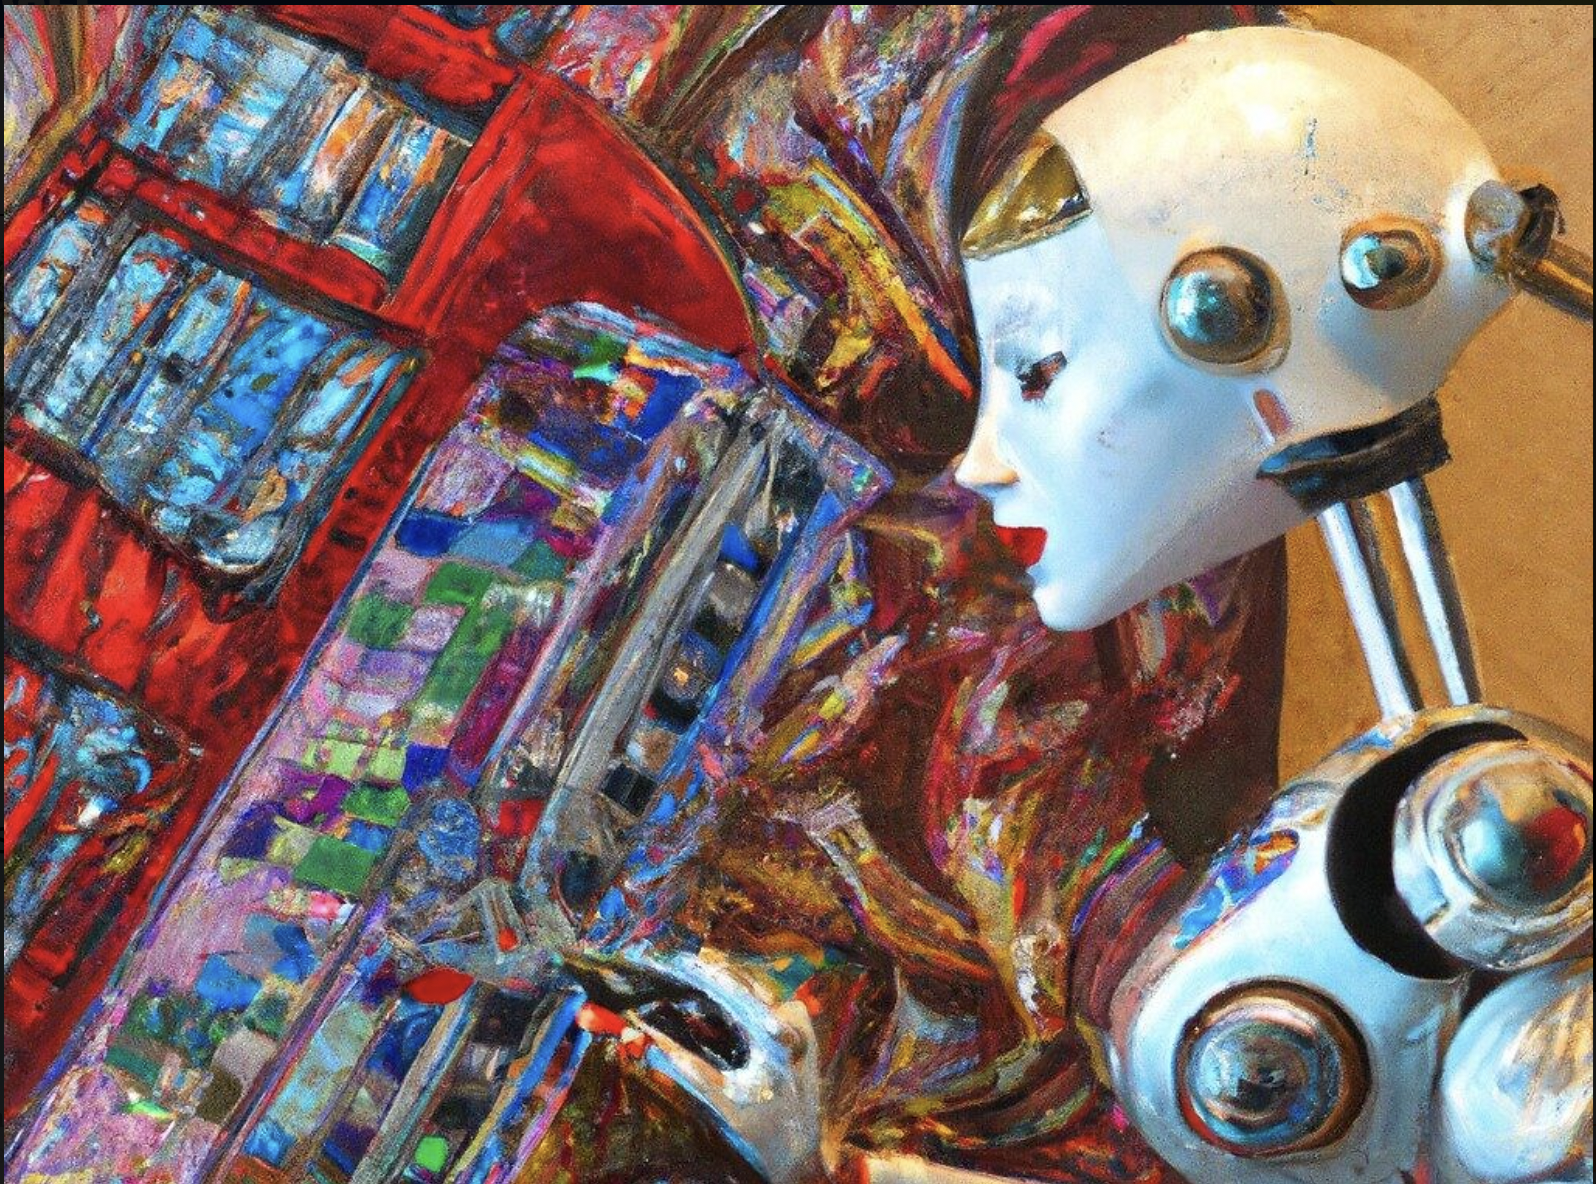  Une image numérique générée par la technologie de l'intelligence artificielle DALL-E à partir de l'invite : " Robot humanoïde créant de l'art sur une toile avec de nombreuses couleurs dans le style Art nouveau », en décembre 2022. (Crédit : Image générée avec l'aide de DALL-E)